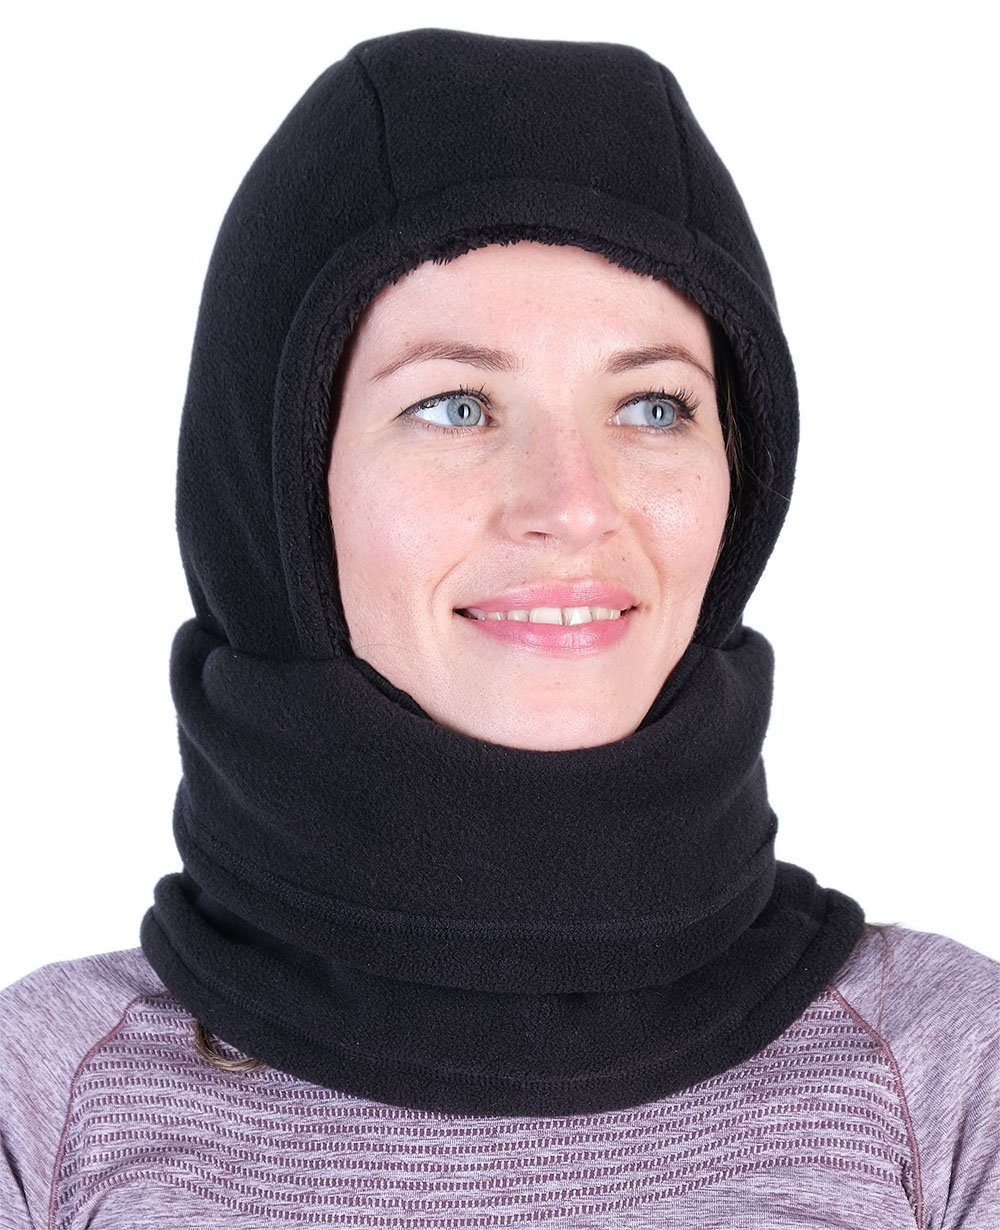 Hilltop Schal »Polar Balaclava mit Fleece, Sturmhaube, Gesichtsmaske,  Winter-Mütze für Herren, Damen und Jugendliche« online kaufen | OTTO